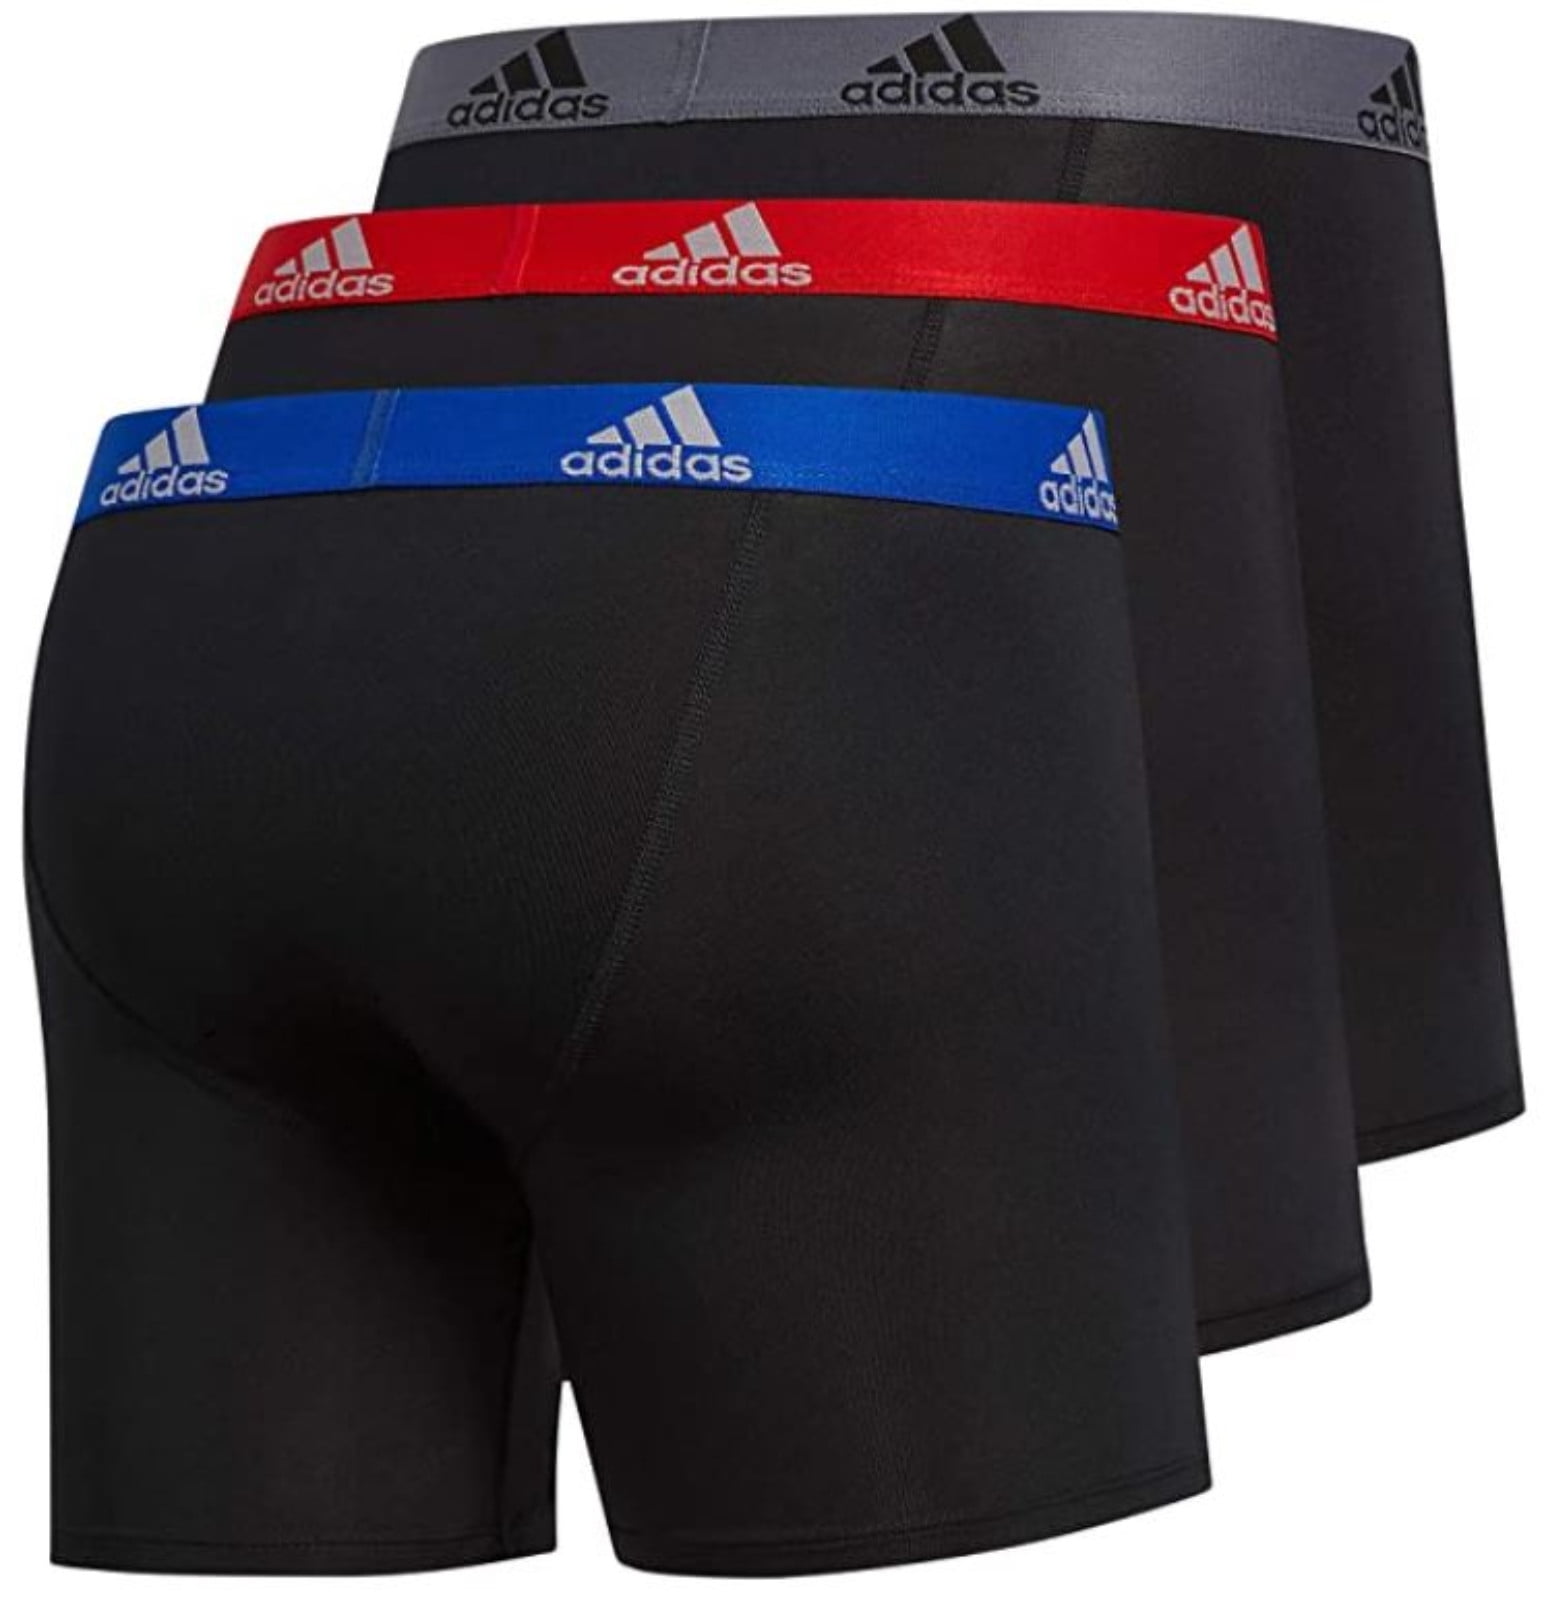 Adidas Men's Performance Boxer Brief Underwear (3-Pack) - Black